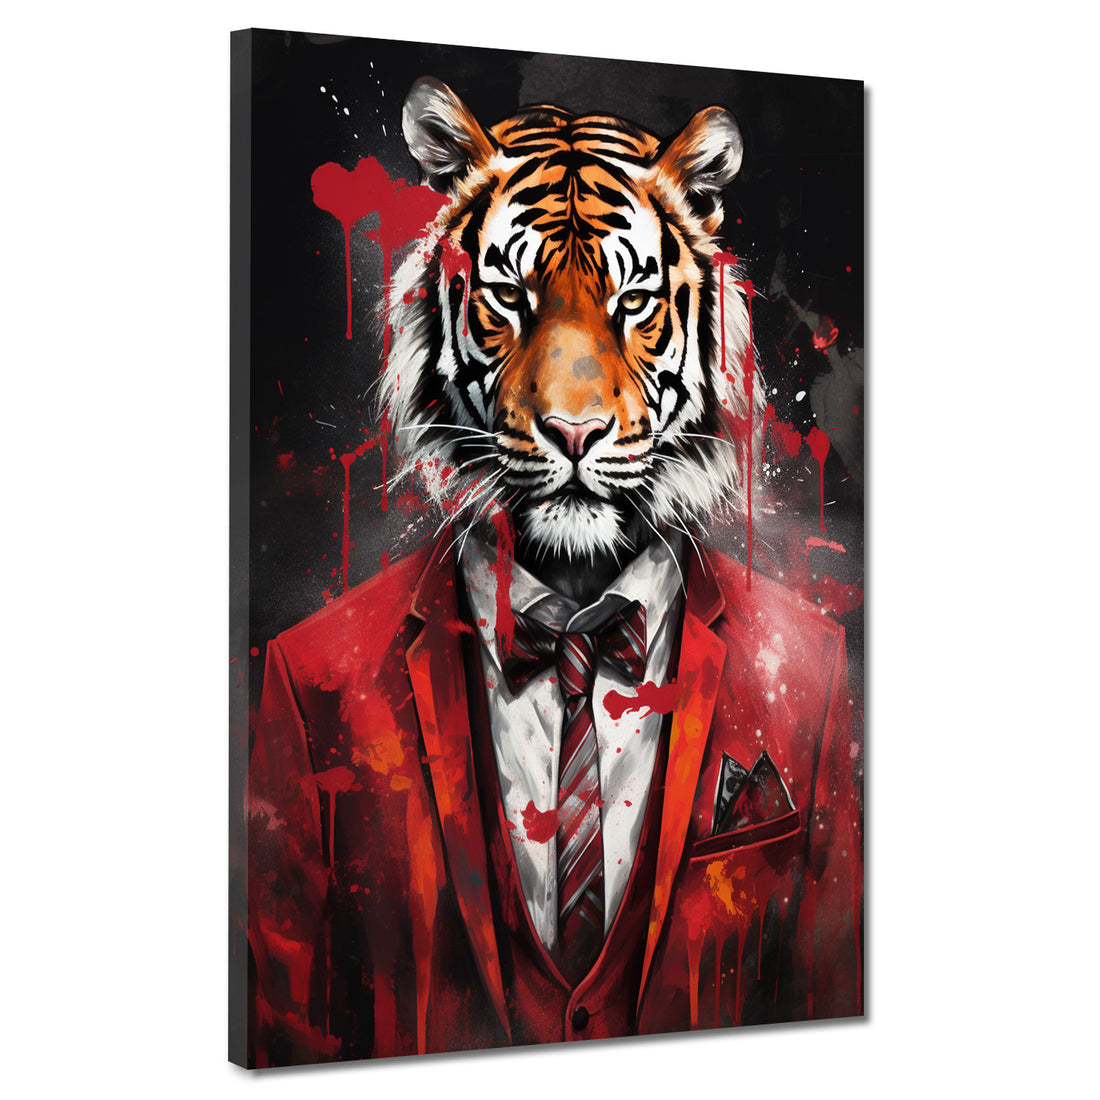 Wandbild Tiger frontal im roten Anzug abstrakt Pop Art